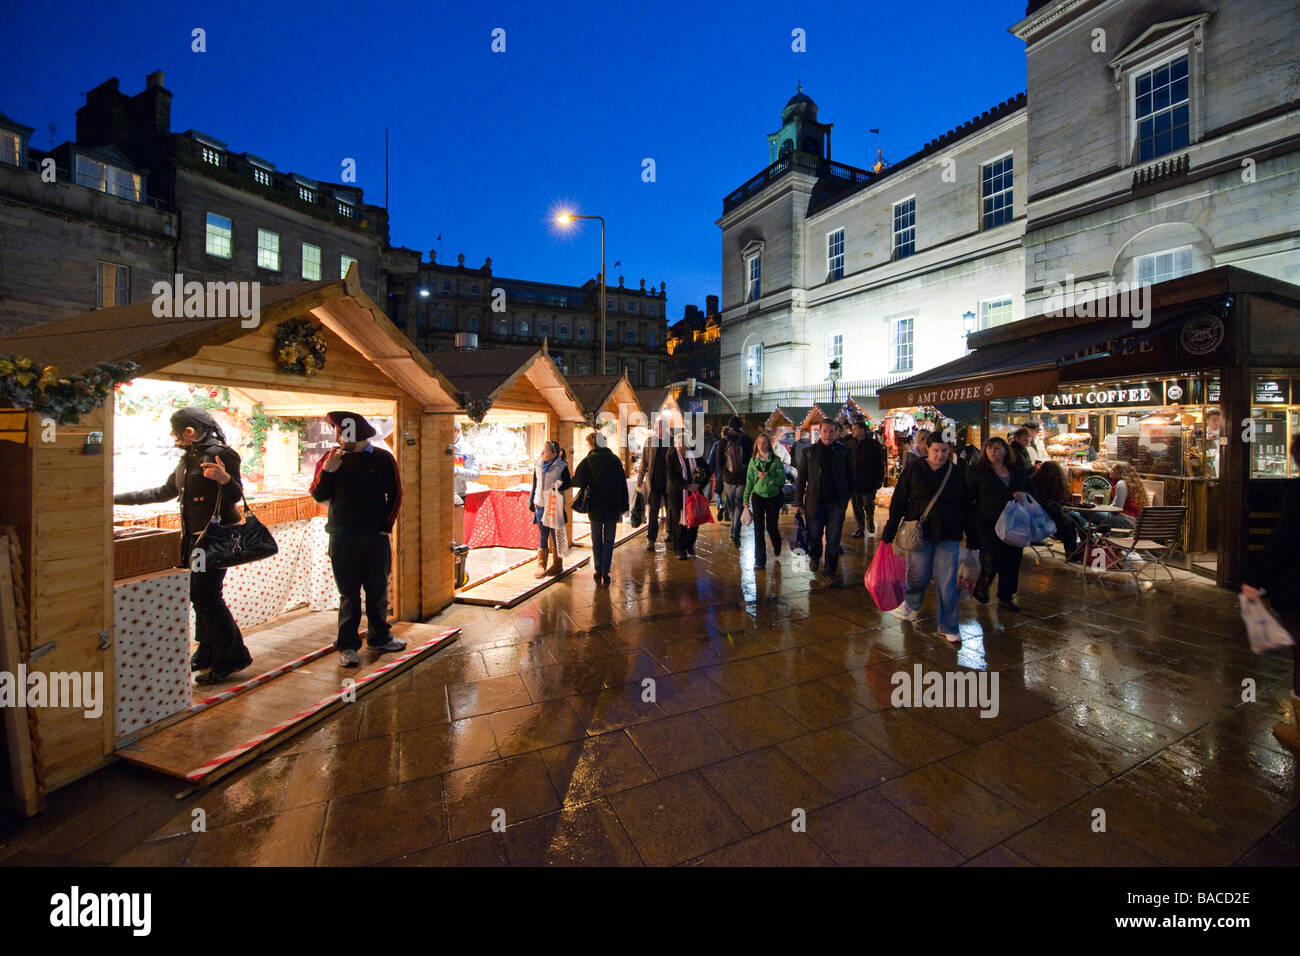 Édimbourg - ville de nuit Décembre Marchés de Noël à l'extérieur de St James Centre shoppers Banque D'Images